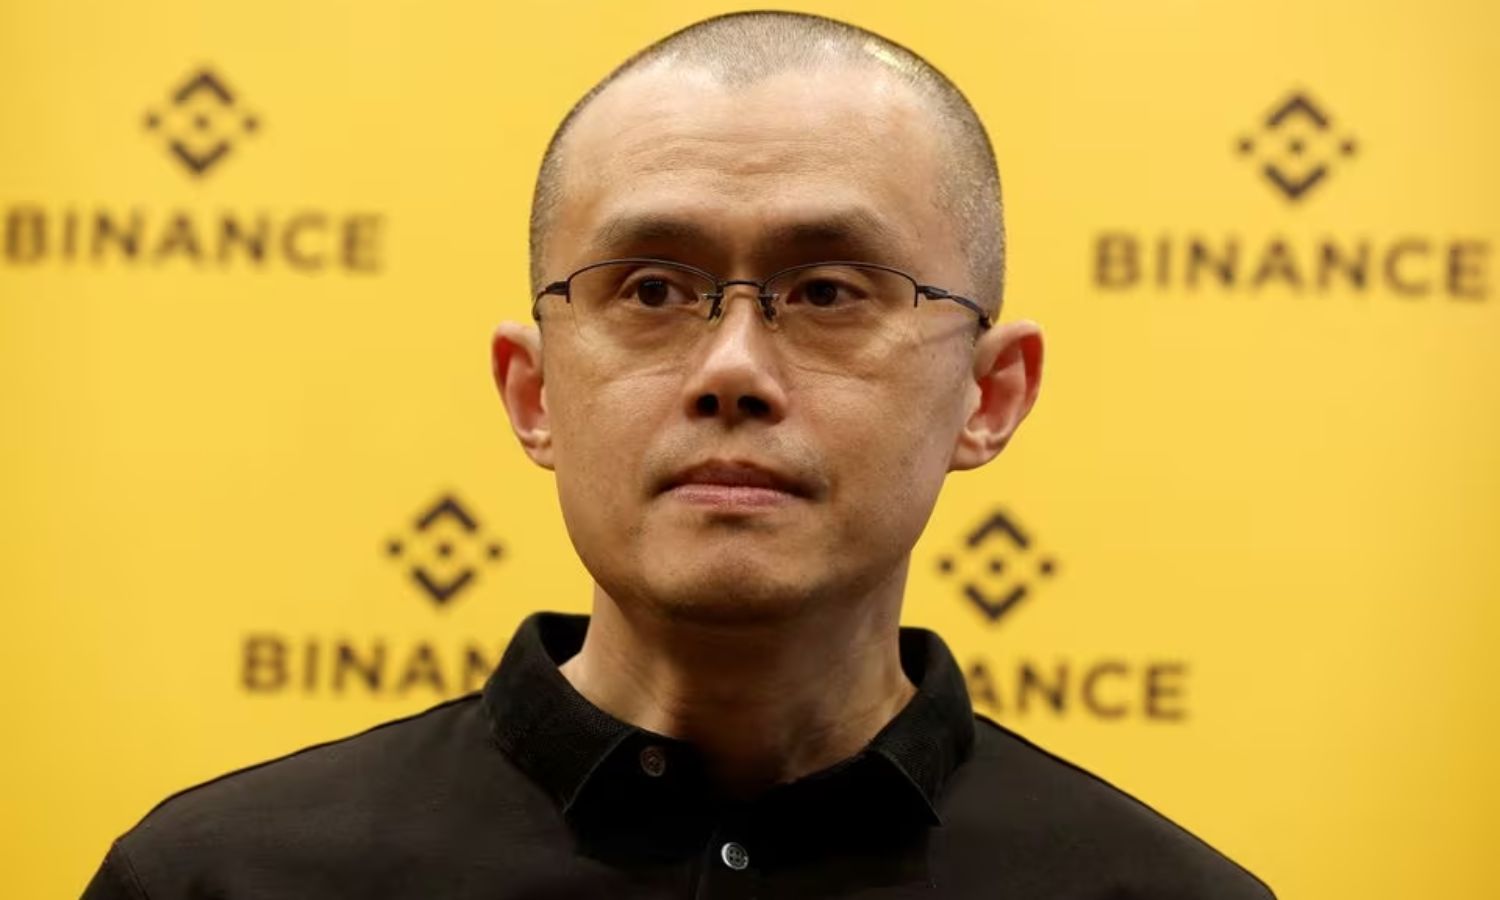 الرئيس التنفيذي السابق لشركة "Binance" تشانغ بينغ تشاو- حزيران 2022 (رويترز)